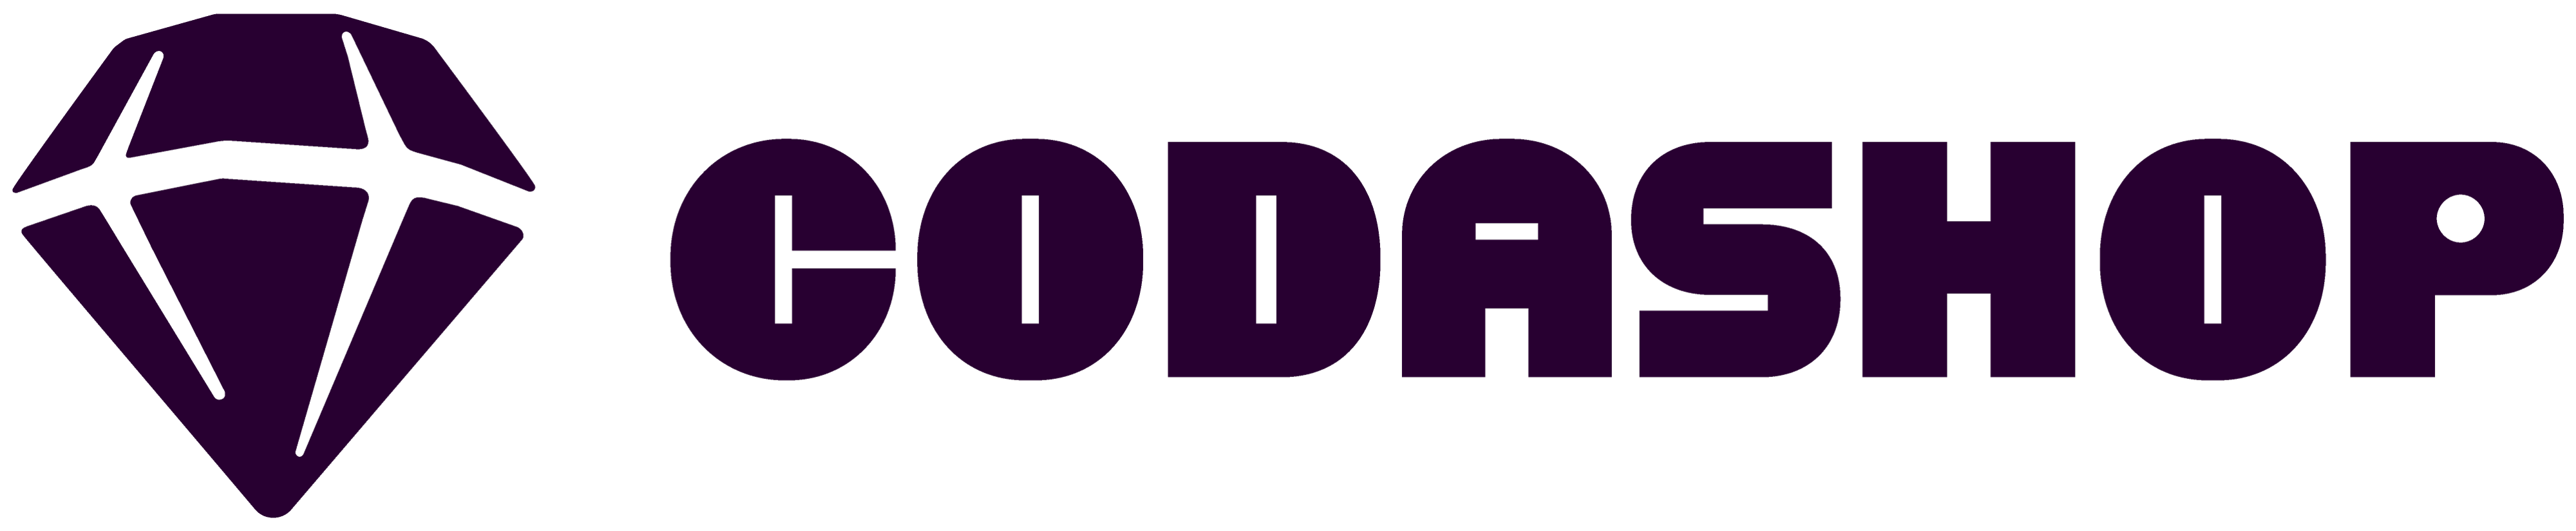 CodaShop Logo